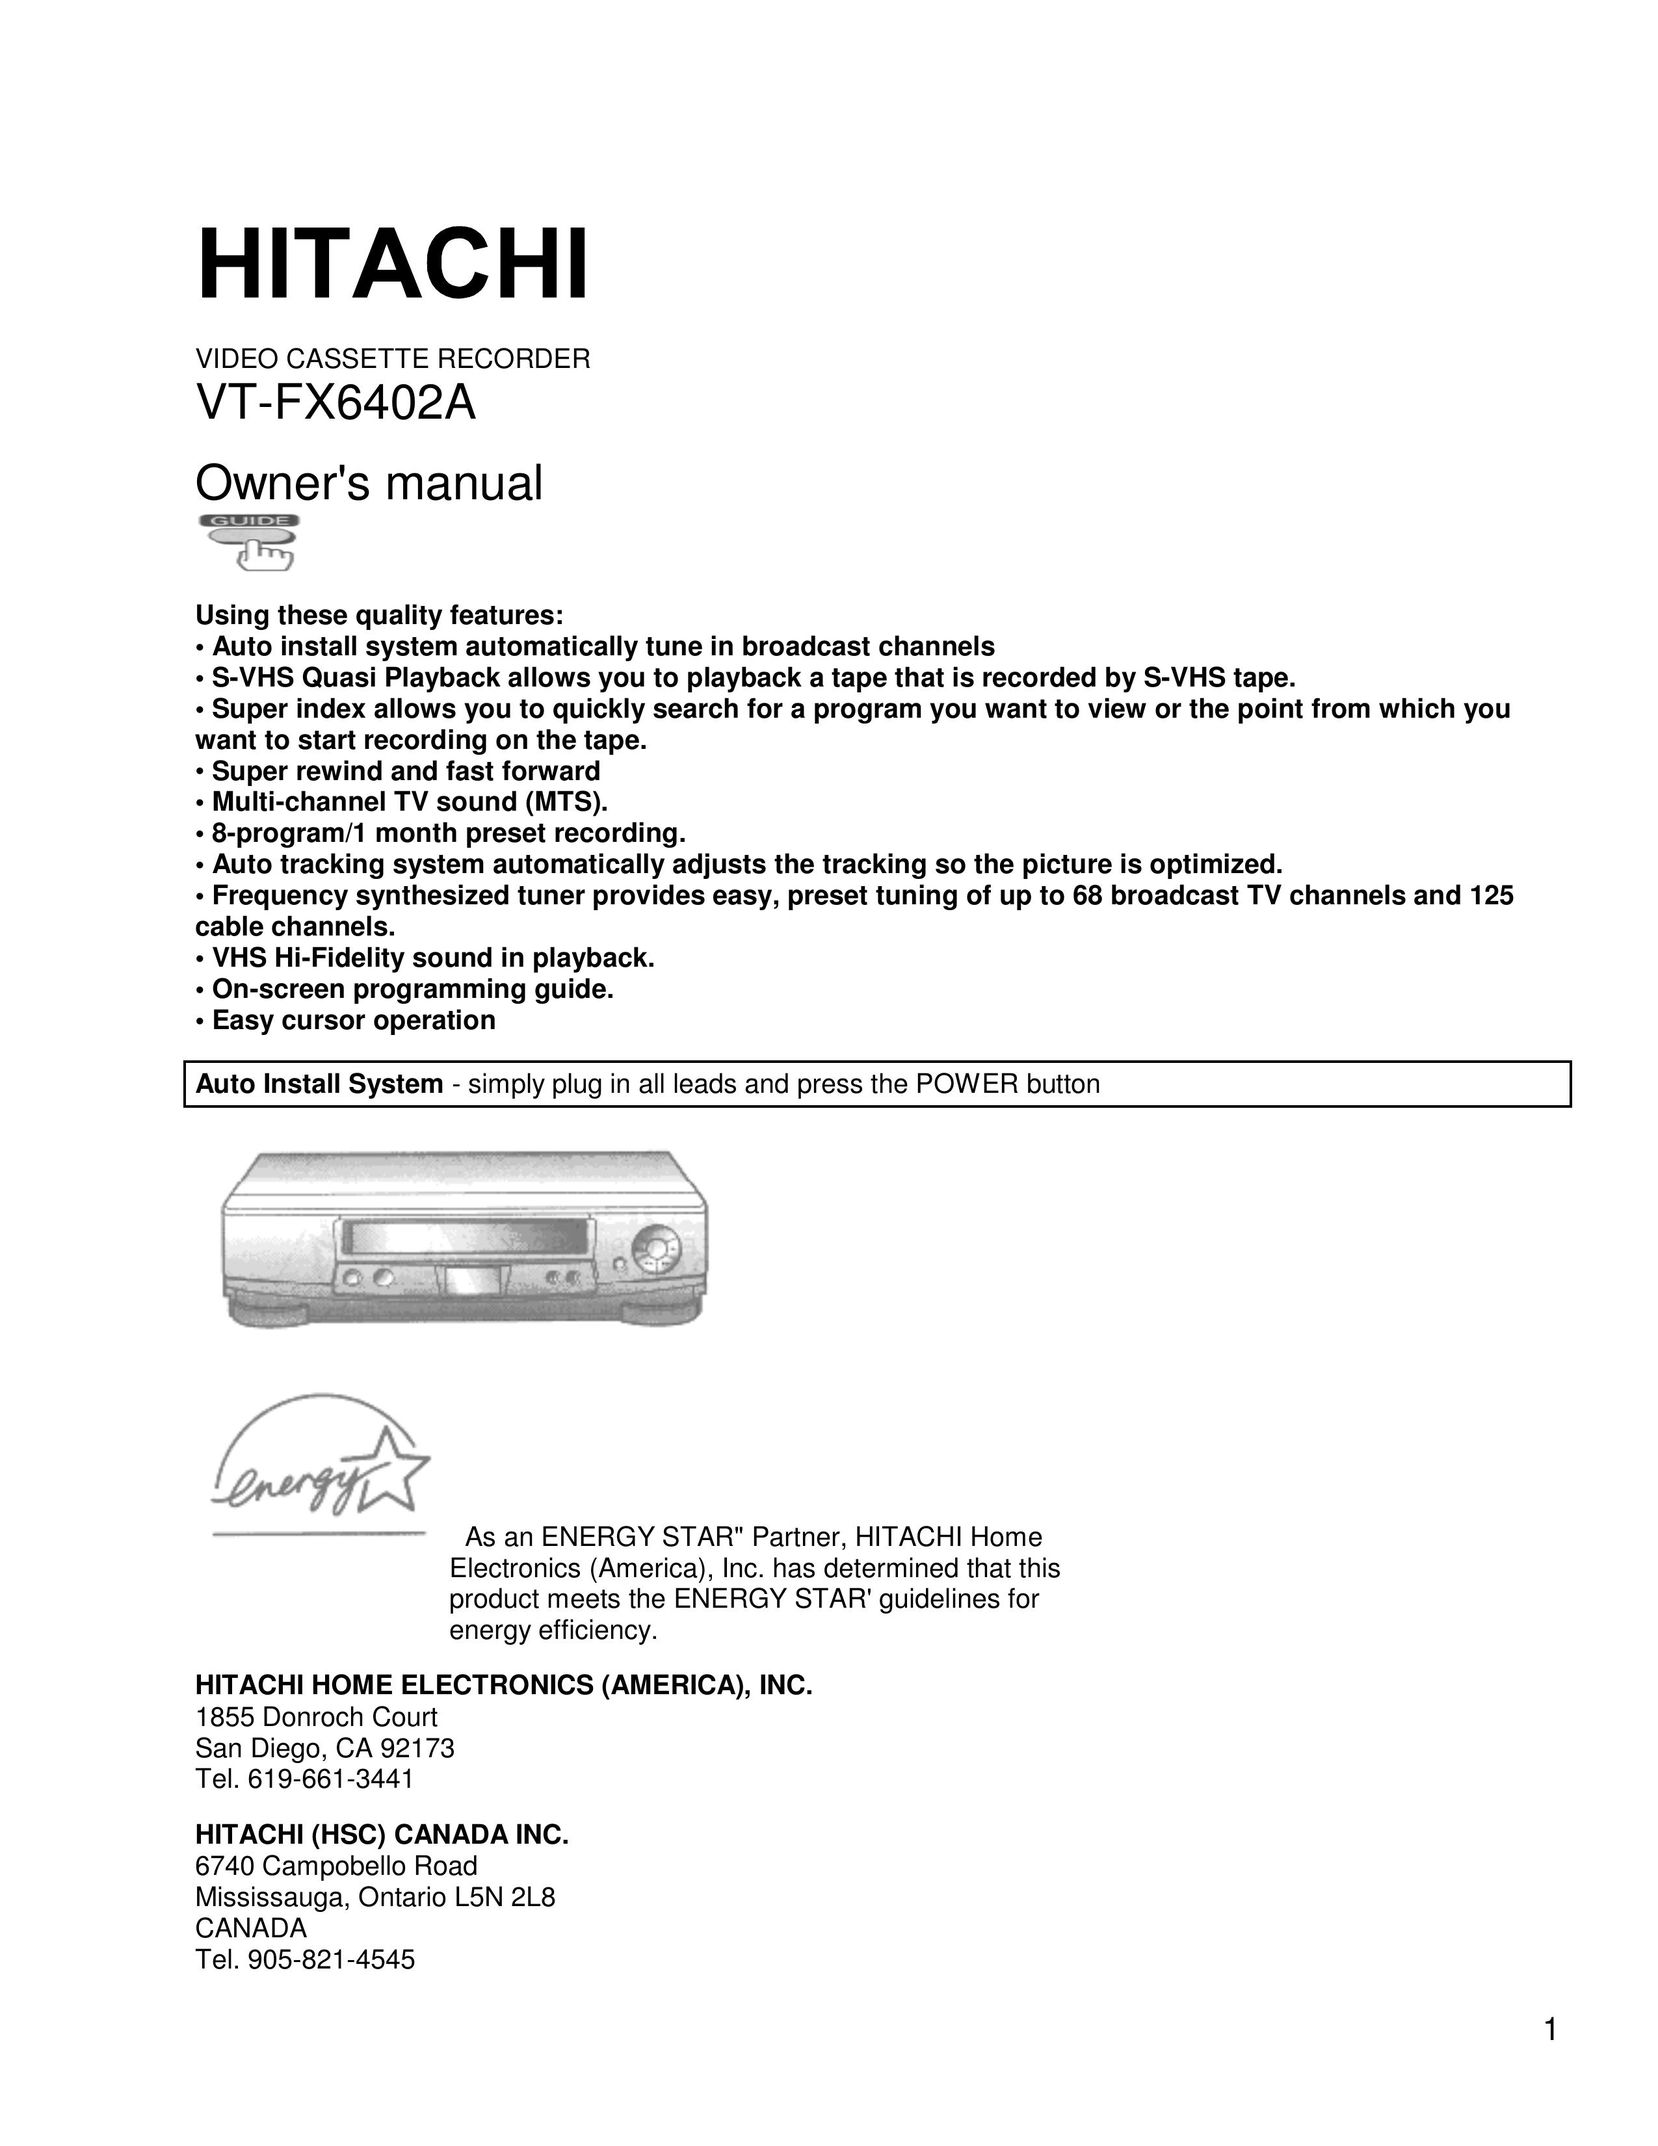 Hitachi VT-FX6402A VCR User Manual